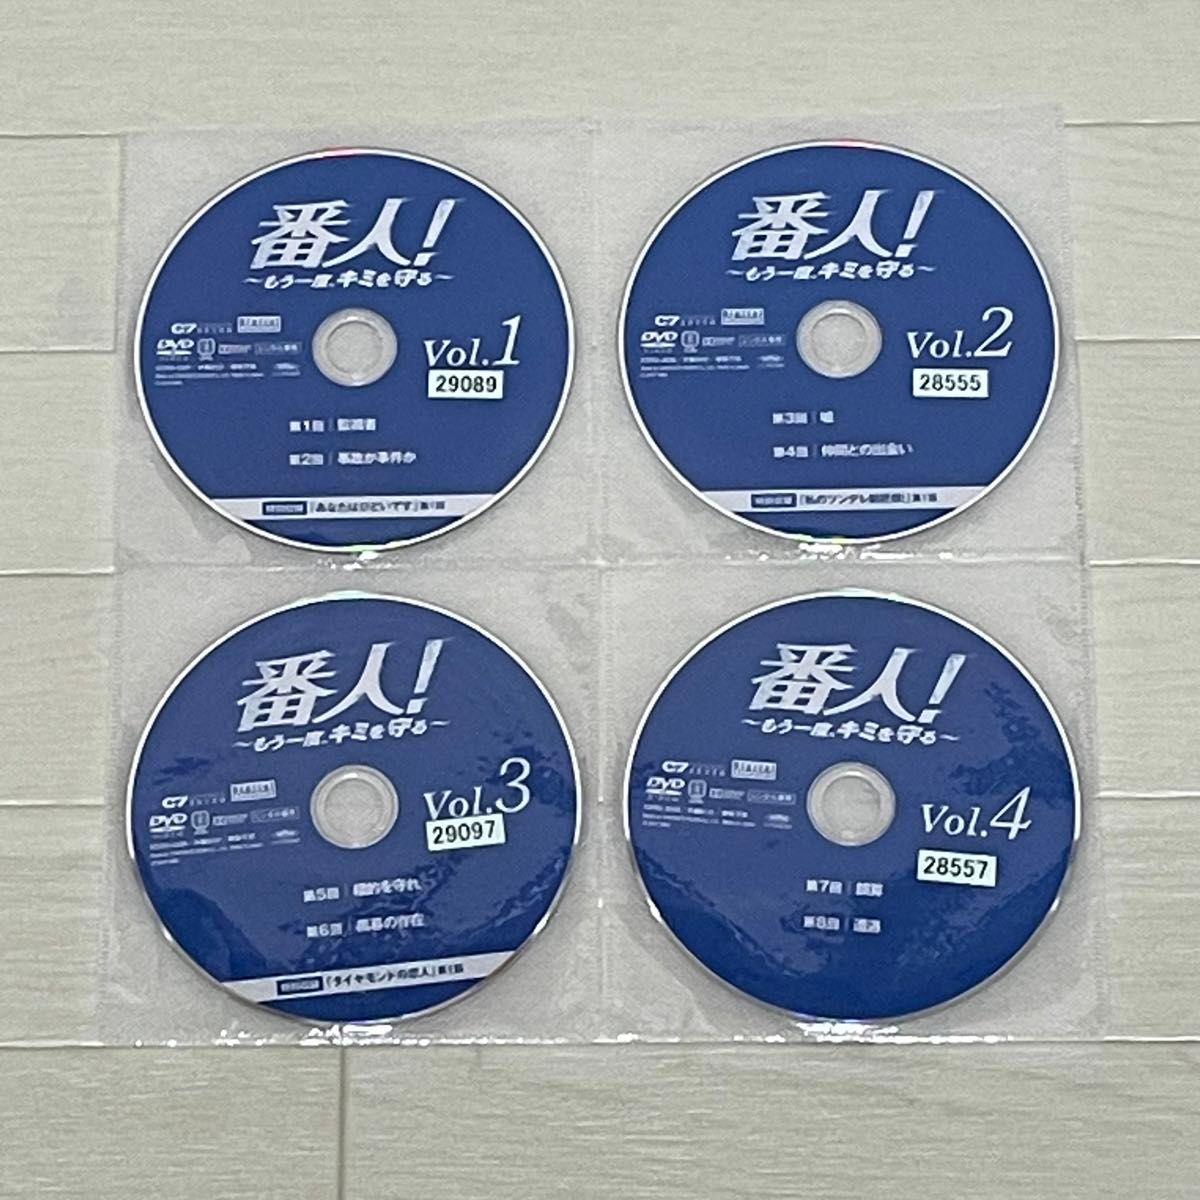 番人 もう一度キミを守る DVD 全巻セット 全12巻 キム・ヨングァン